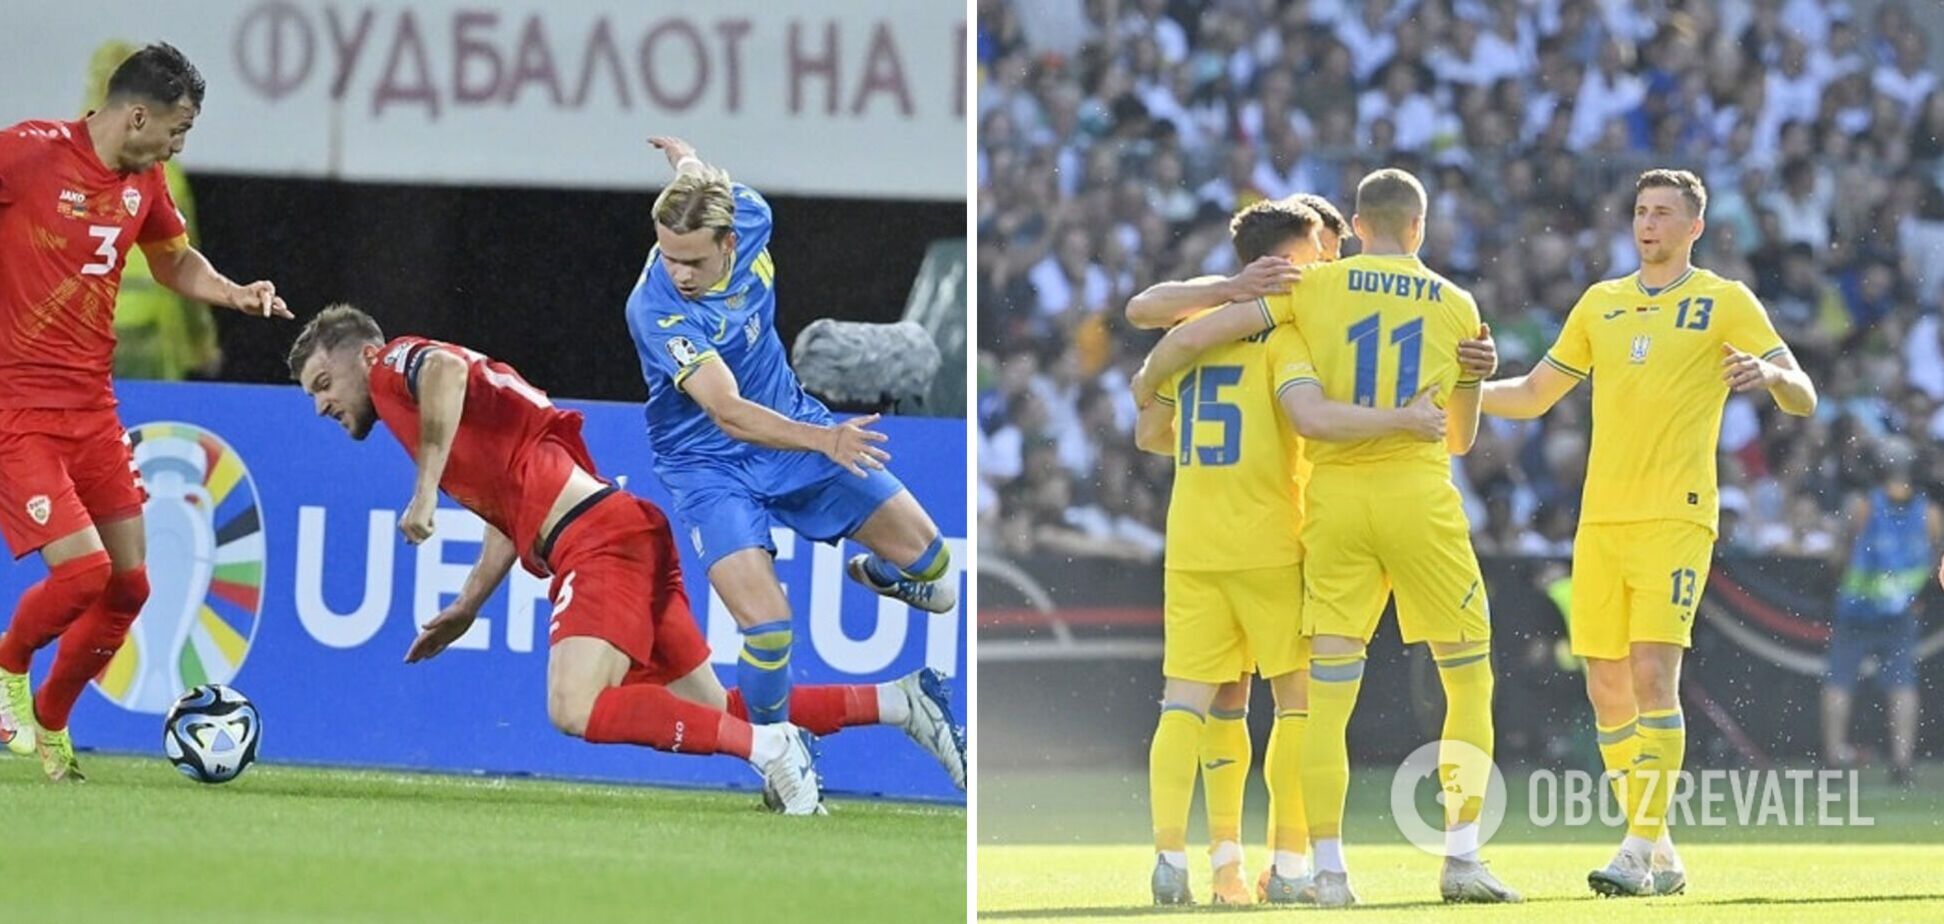 УАФ сделала официальное заявление о сливе состава сборной Украины на матч с Боснией